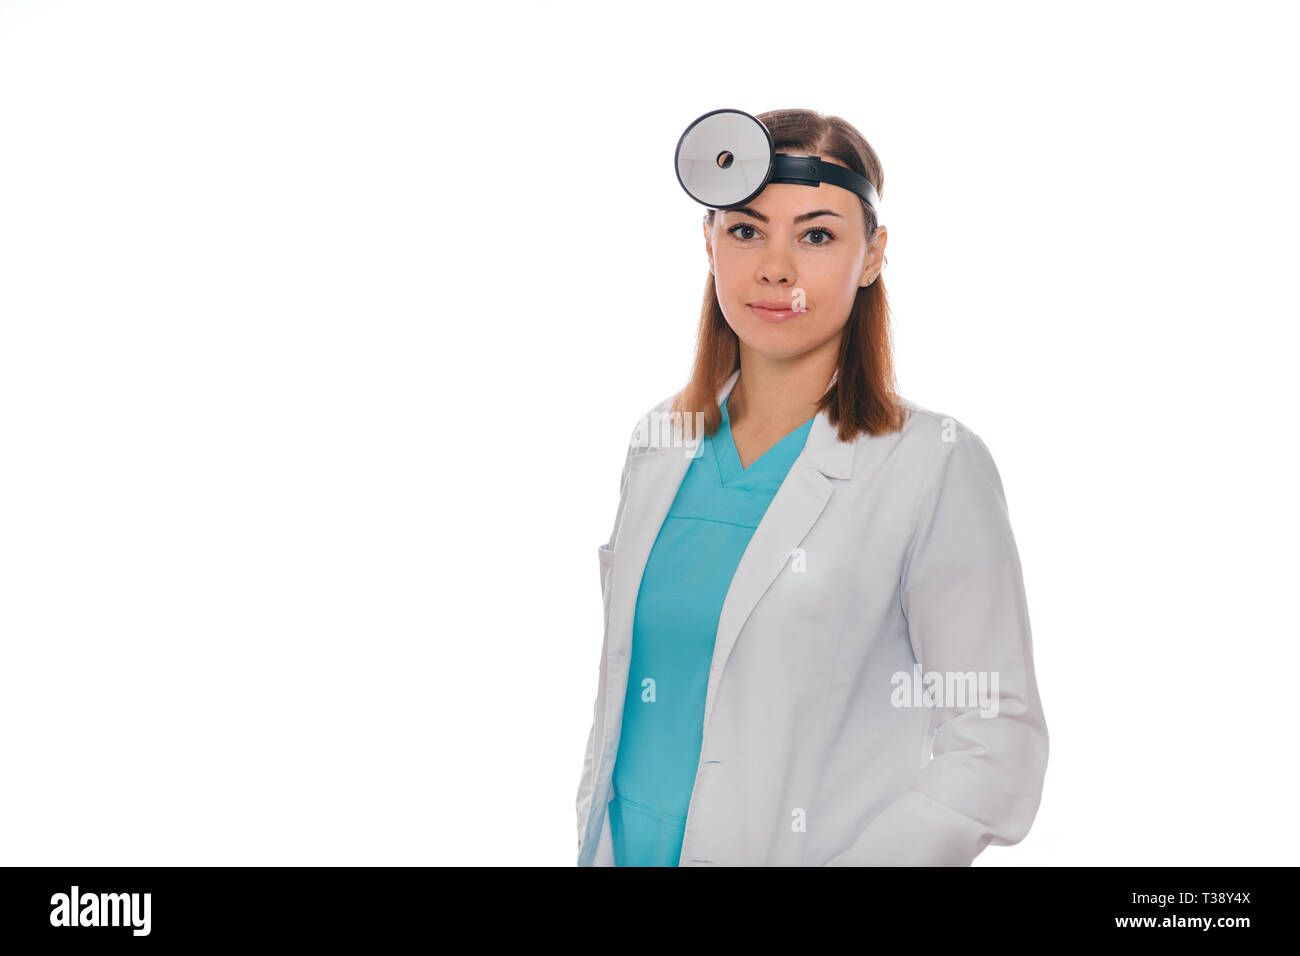 Portrait smiling oto-rhino-laryngologiste médecin médical avec miroir sur head isolated on white Banque D'Images